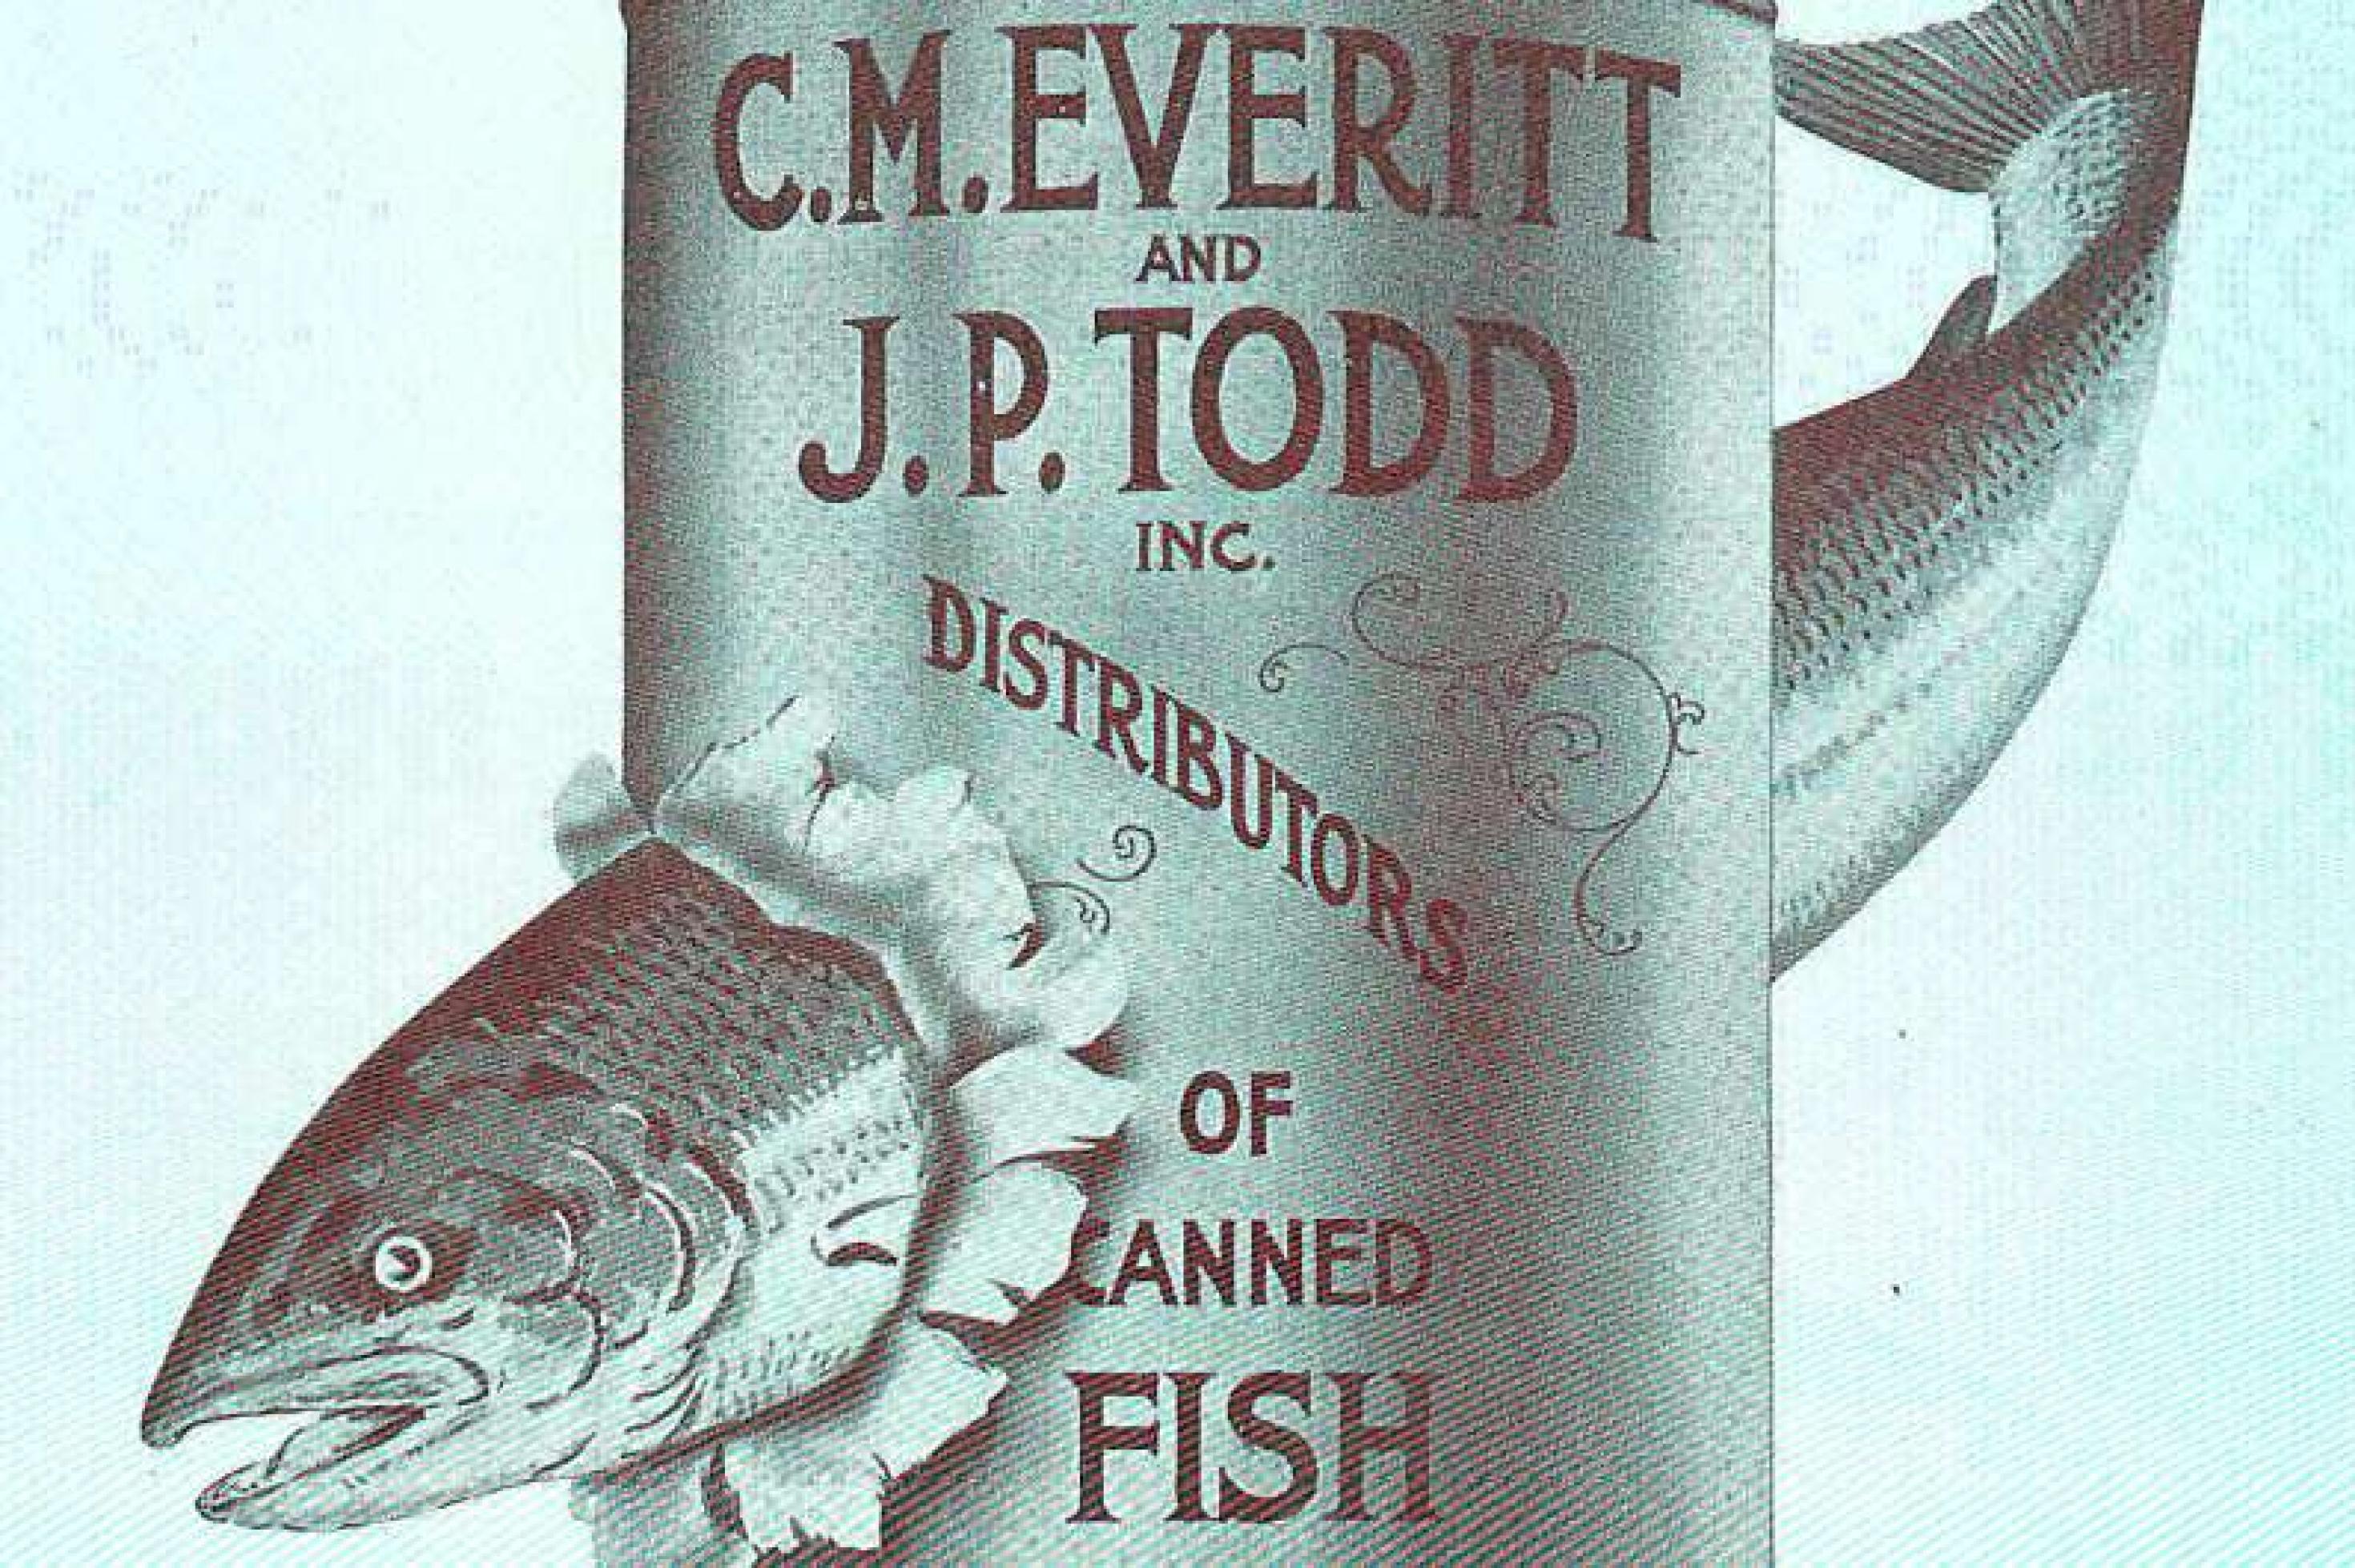 Altertümliches Werbebild von einem Lachs, der eine Konservendose durchschwimmt. Die Aufschrift weist auf eine amerikanische Fischfabrik hin.